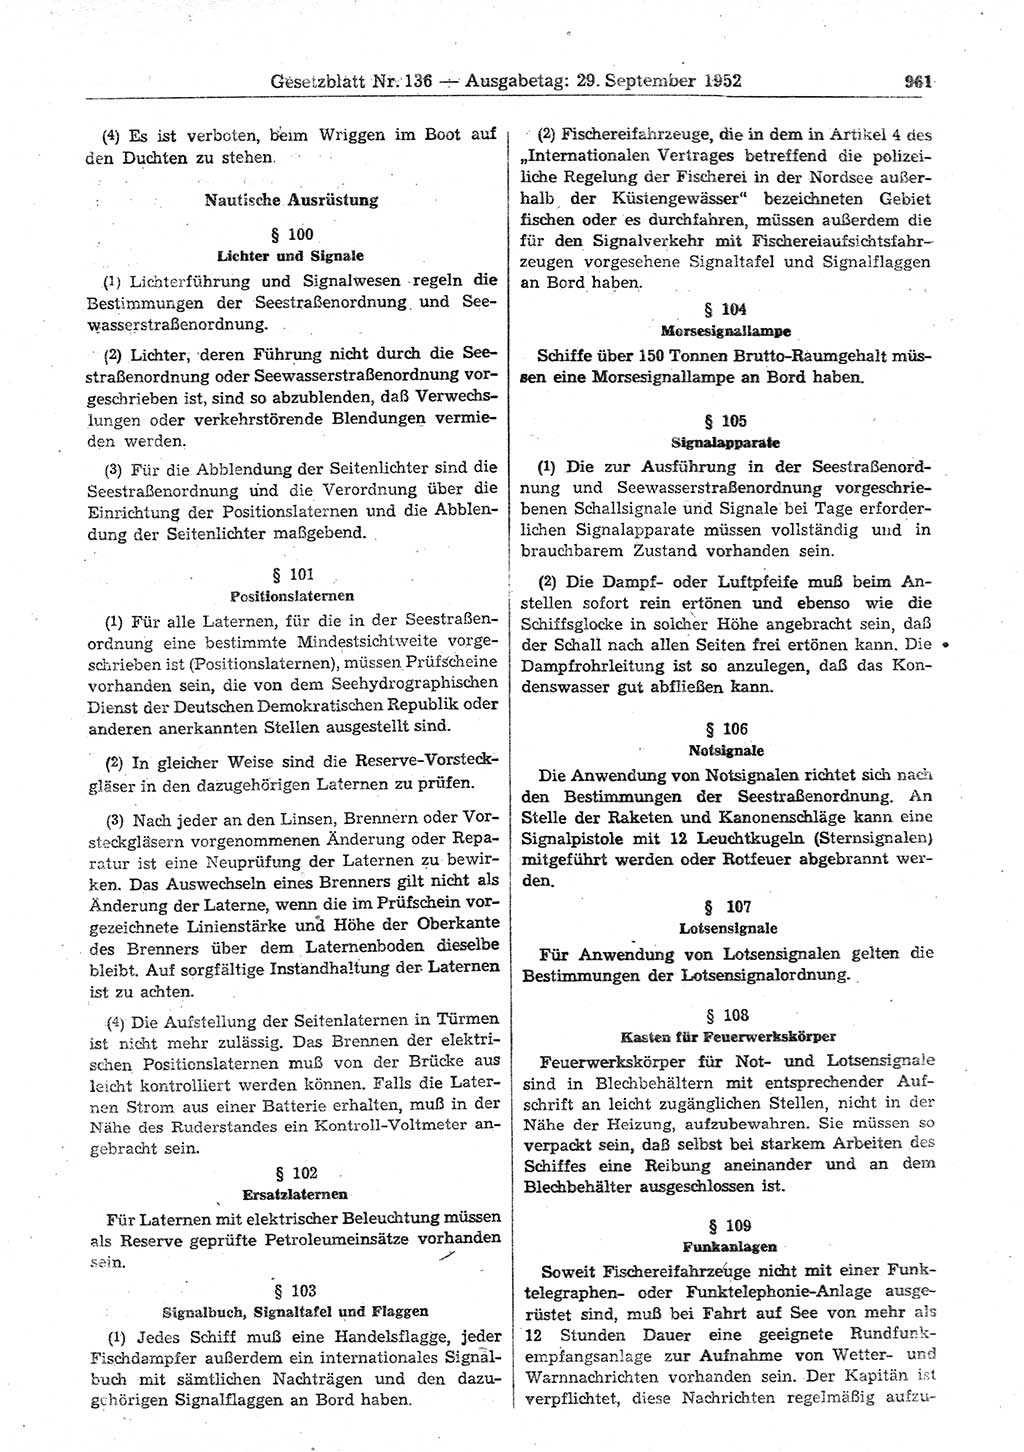 Gesetzblatt (GBl.) der Deutschen Demokratischen Republik (DDR) 1952, Seite 961 (GBl. DDR 1952, S. 961)